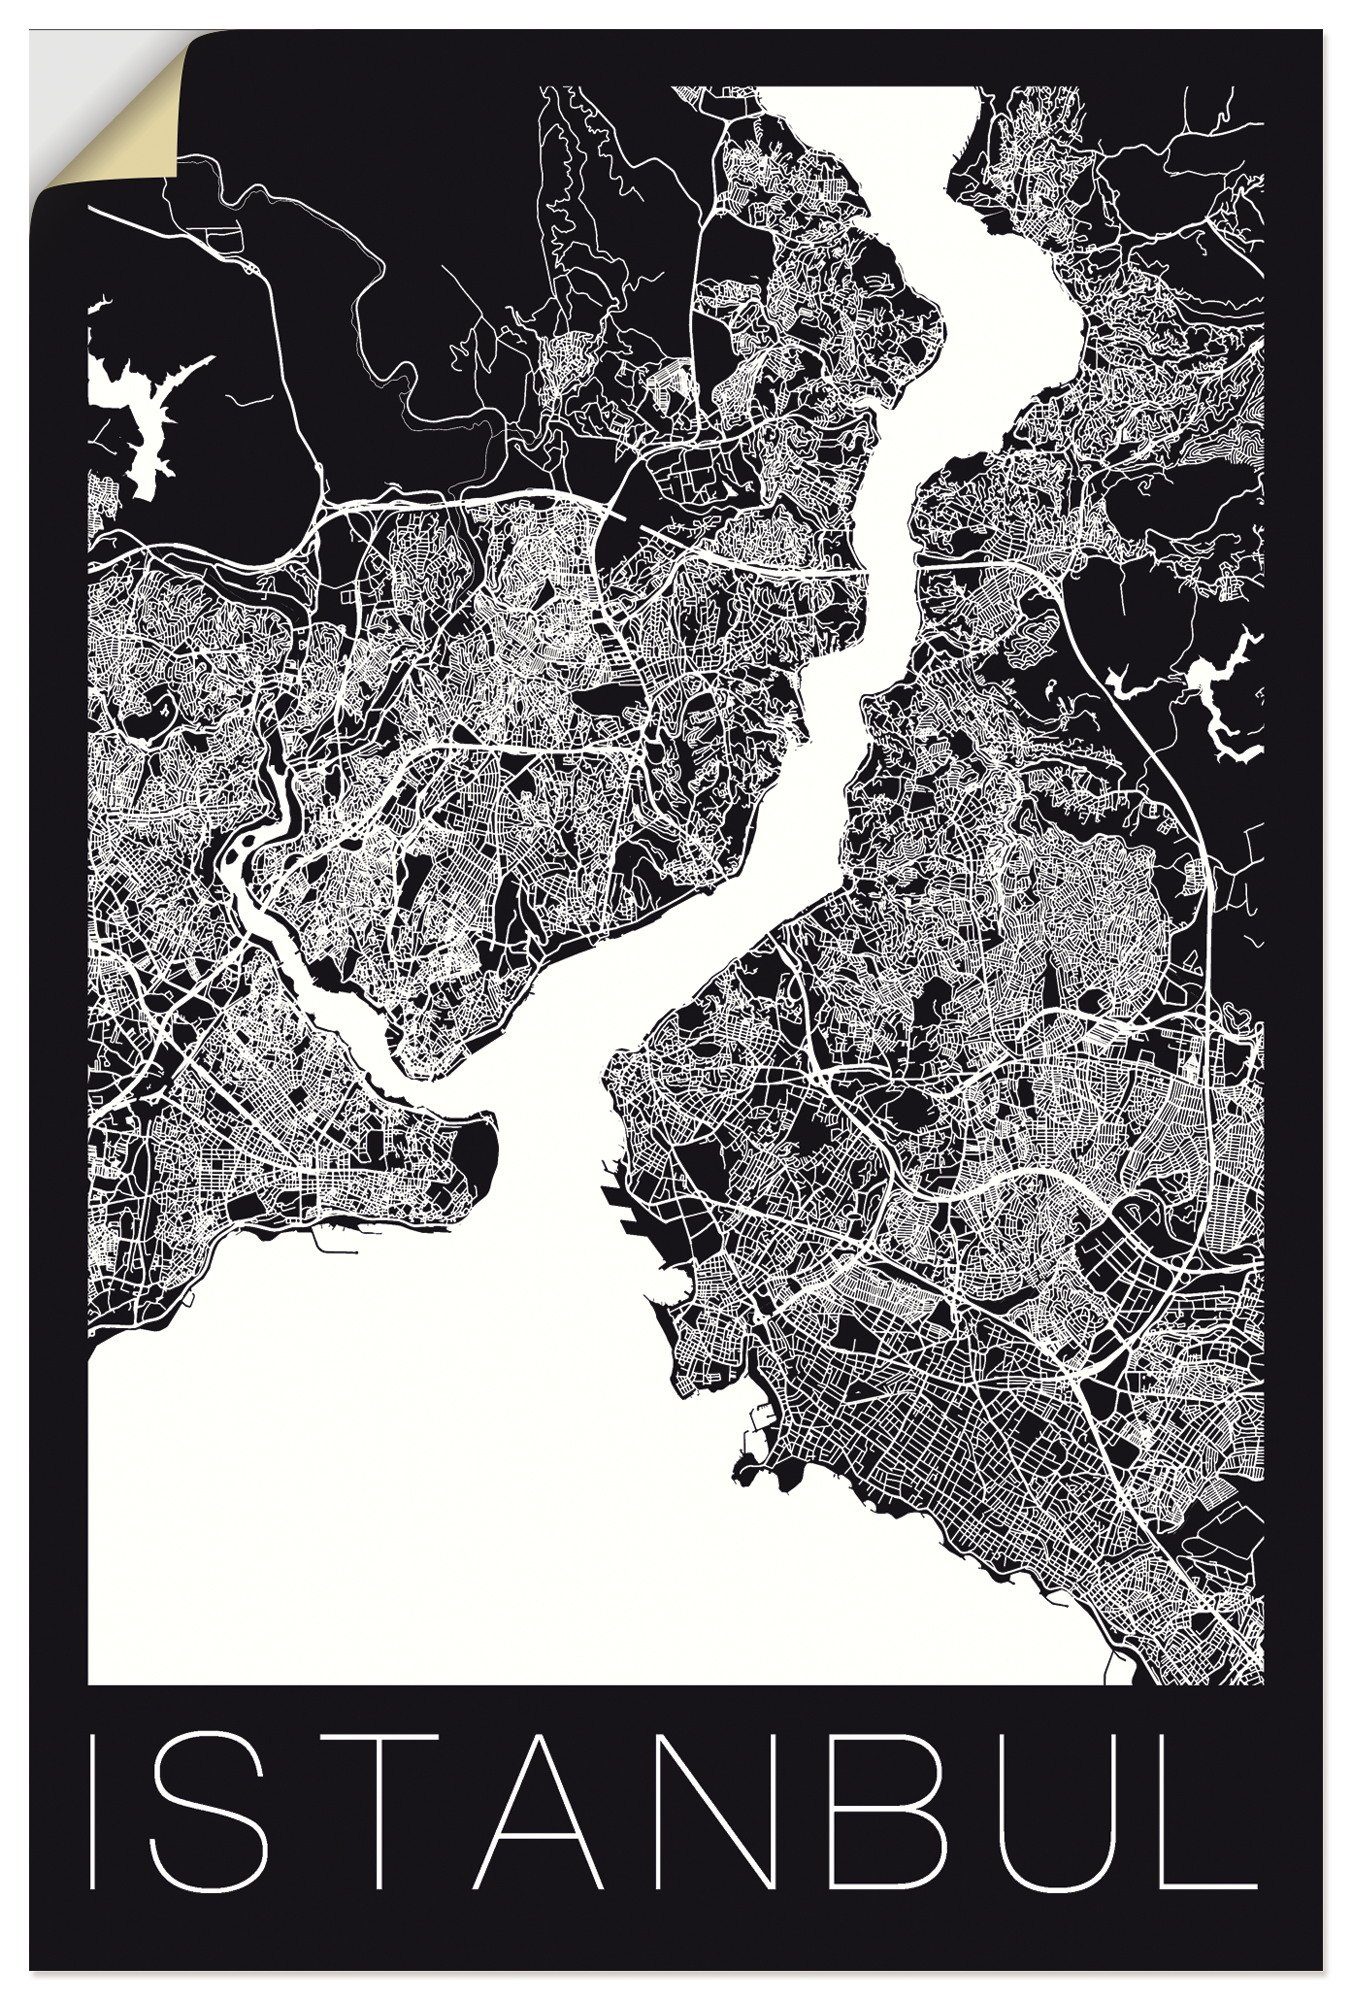 Artland Artprint Retro kaart Istanbul zwart & wit in vele afmetingen & productsoorten - artprint van aluminium / artprint voor buiten, artprint op linnen, poster, muursticker / wan